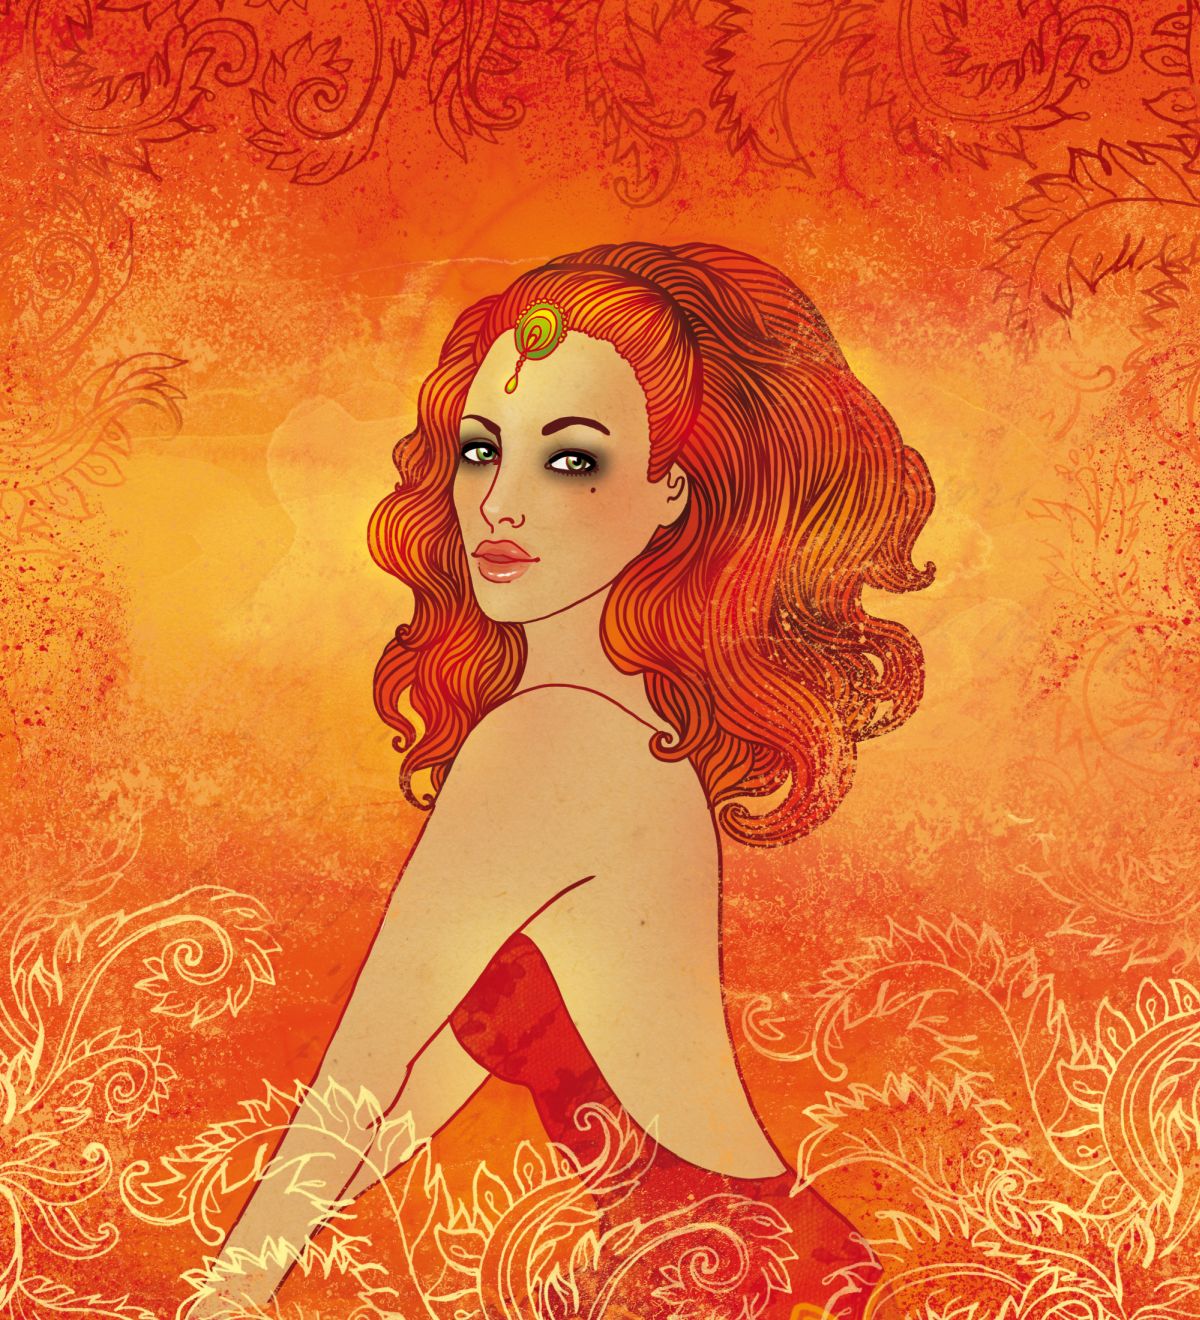 O femeie frumoasă, cu părul roșcat și desprins, într-o rochie roșie, ilustrează zodia Leu.